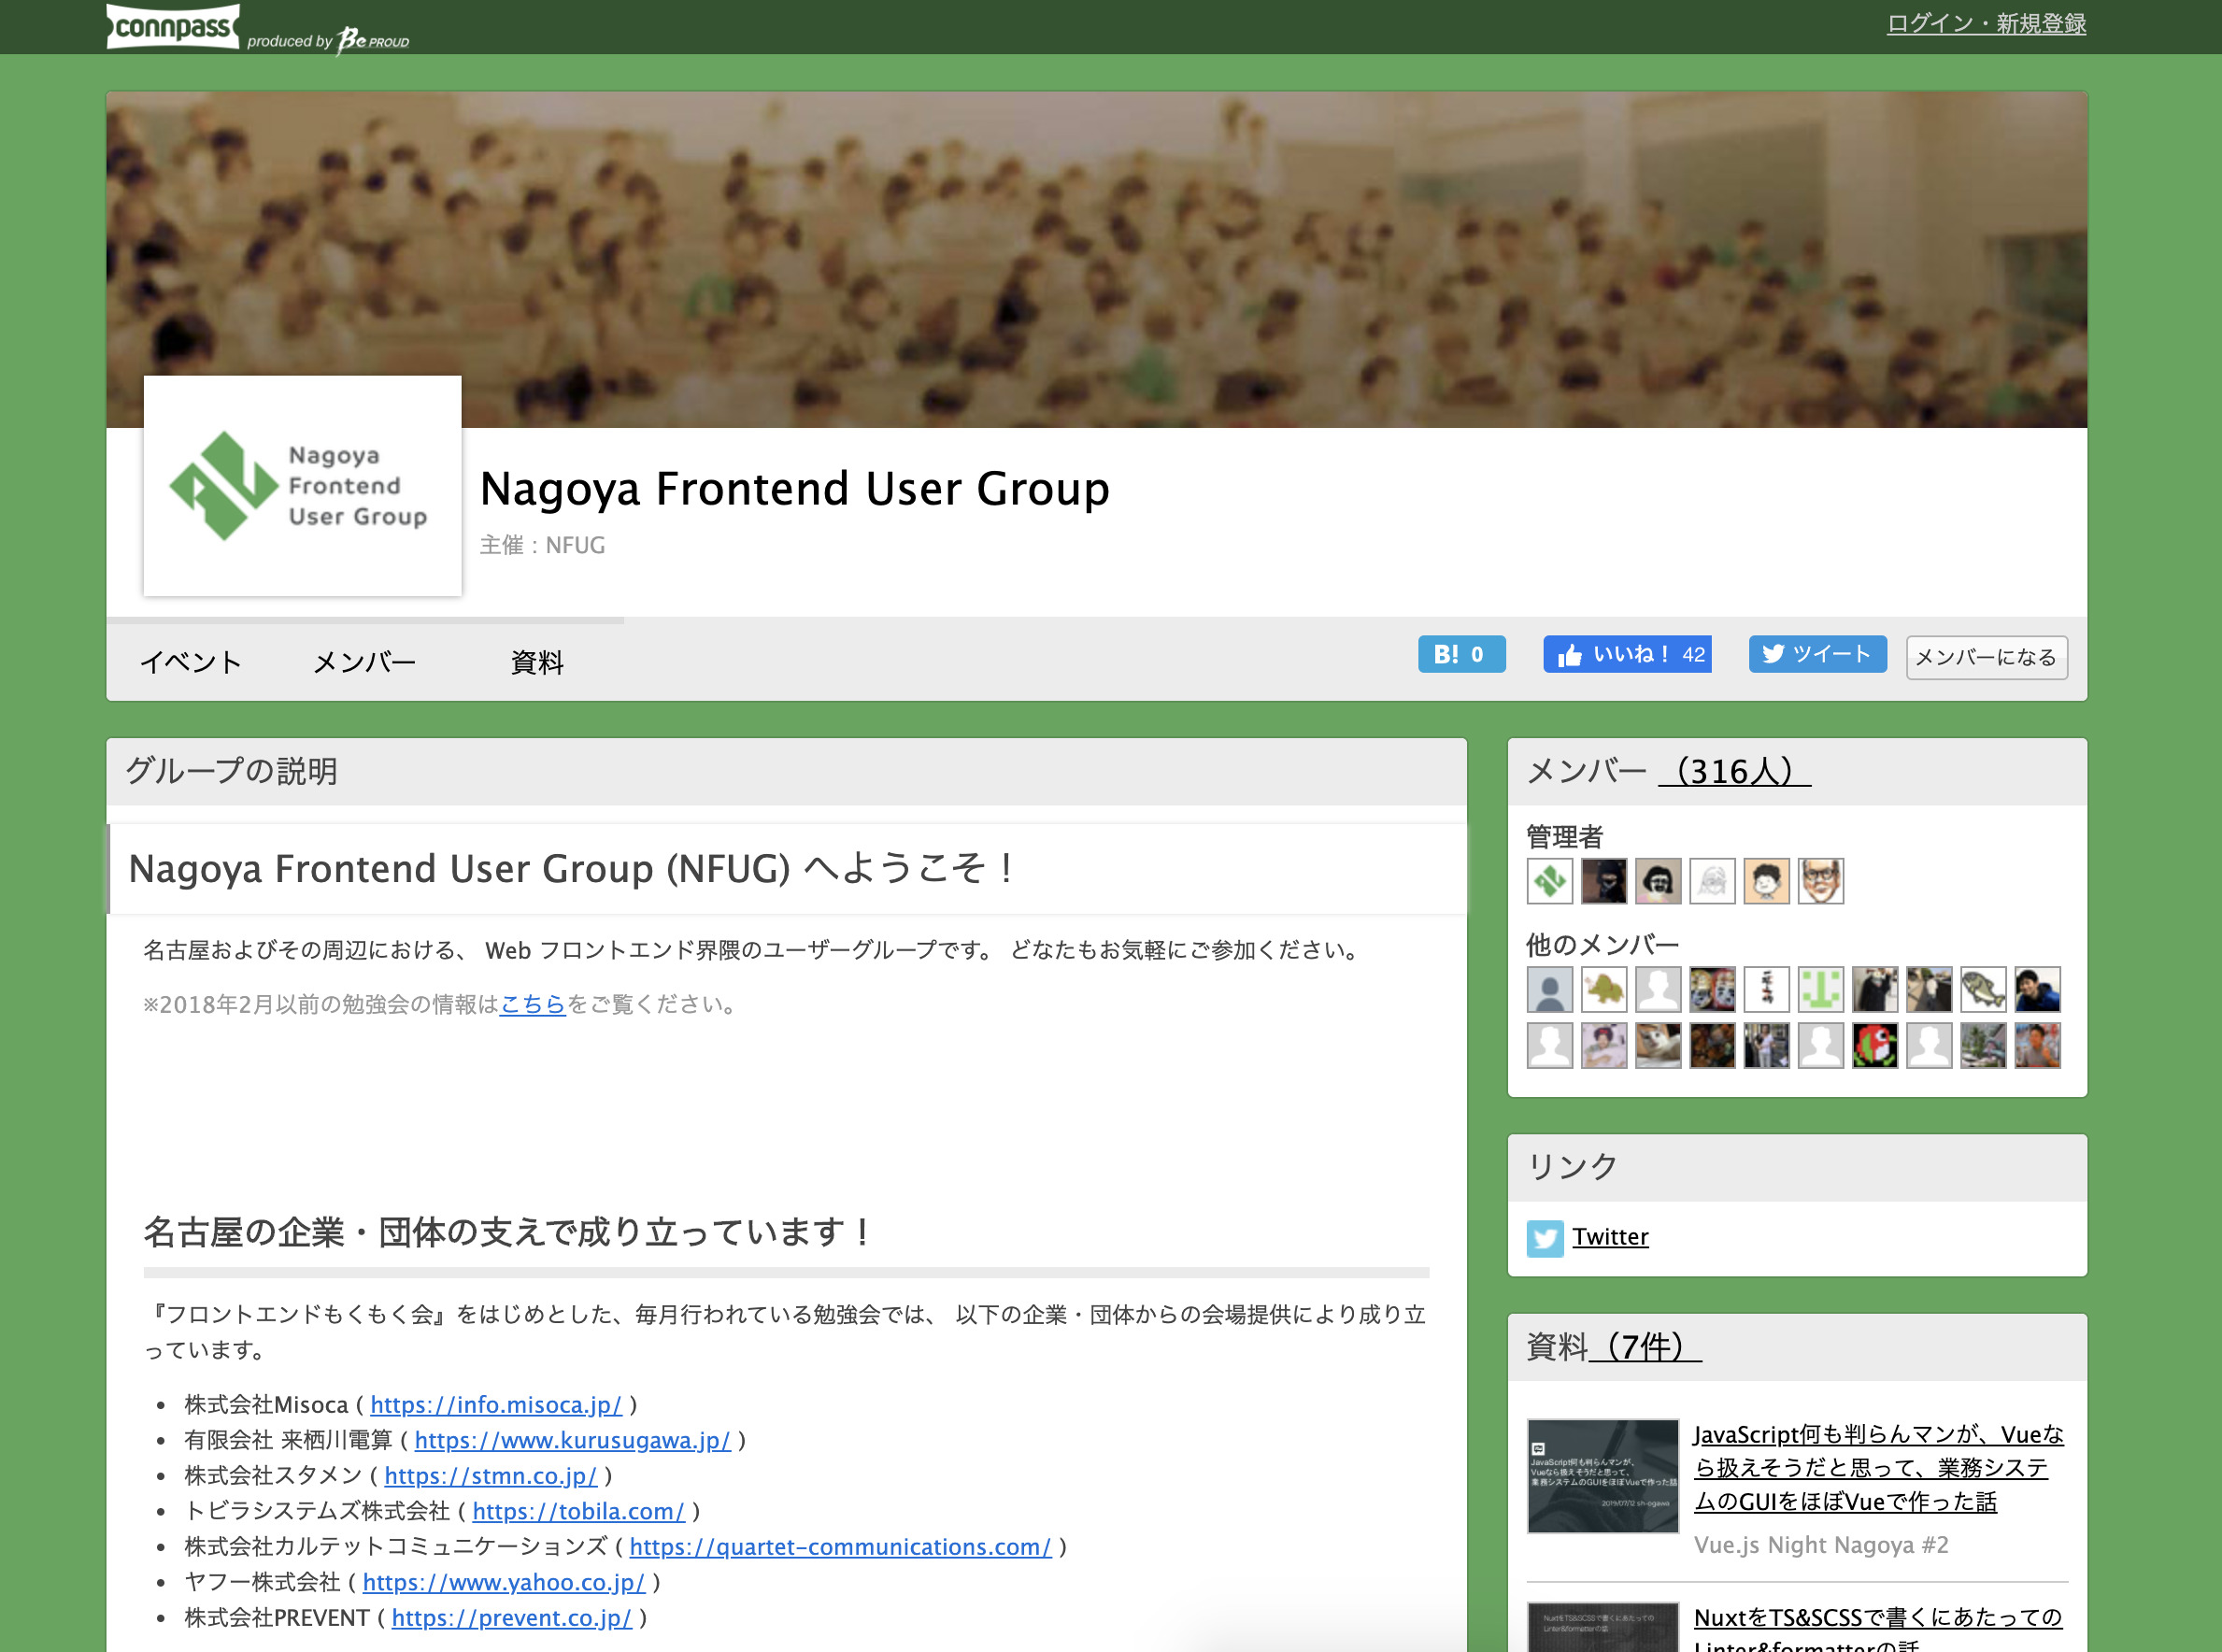 Nagoya Frontend User Group